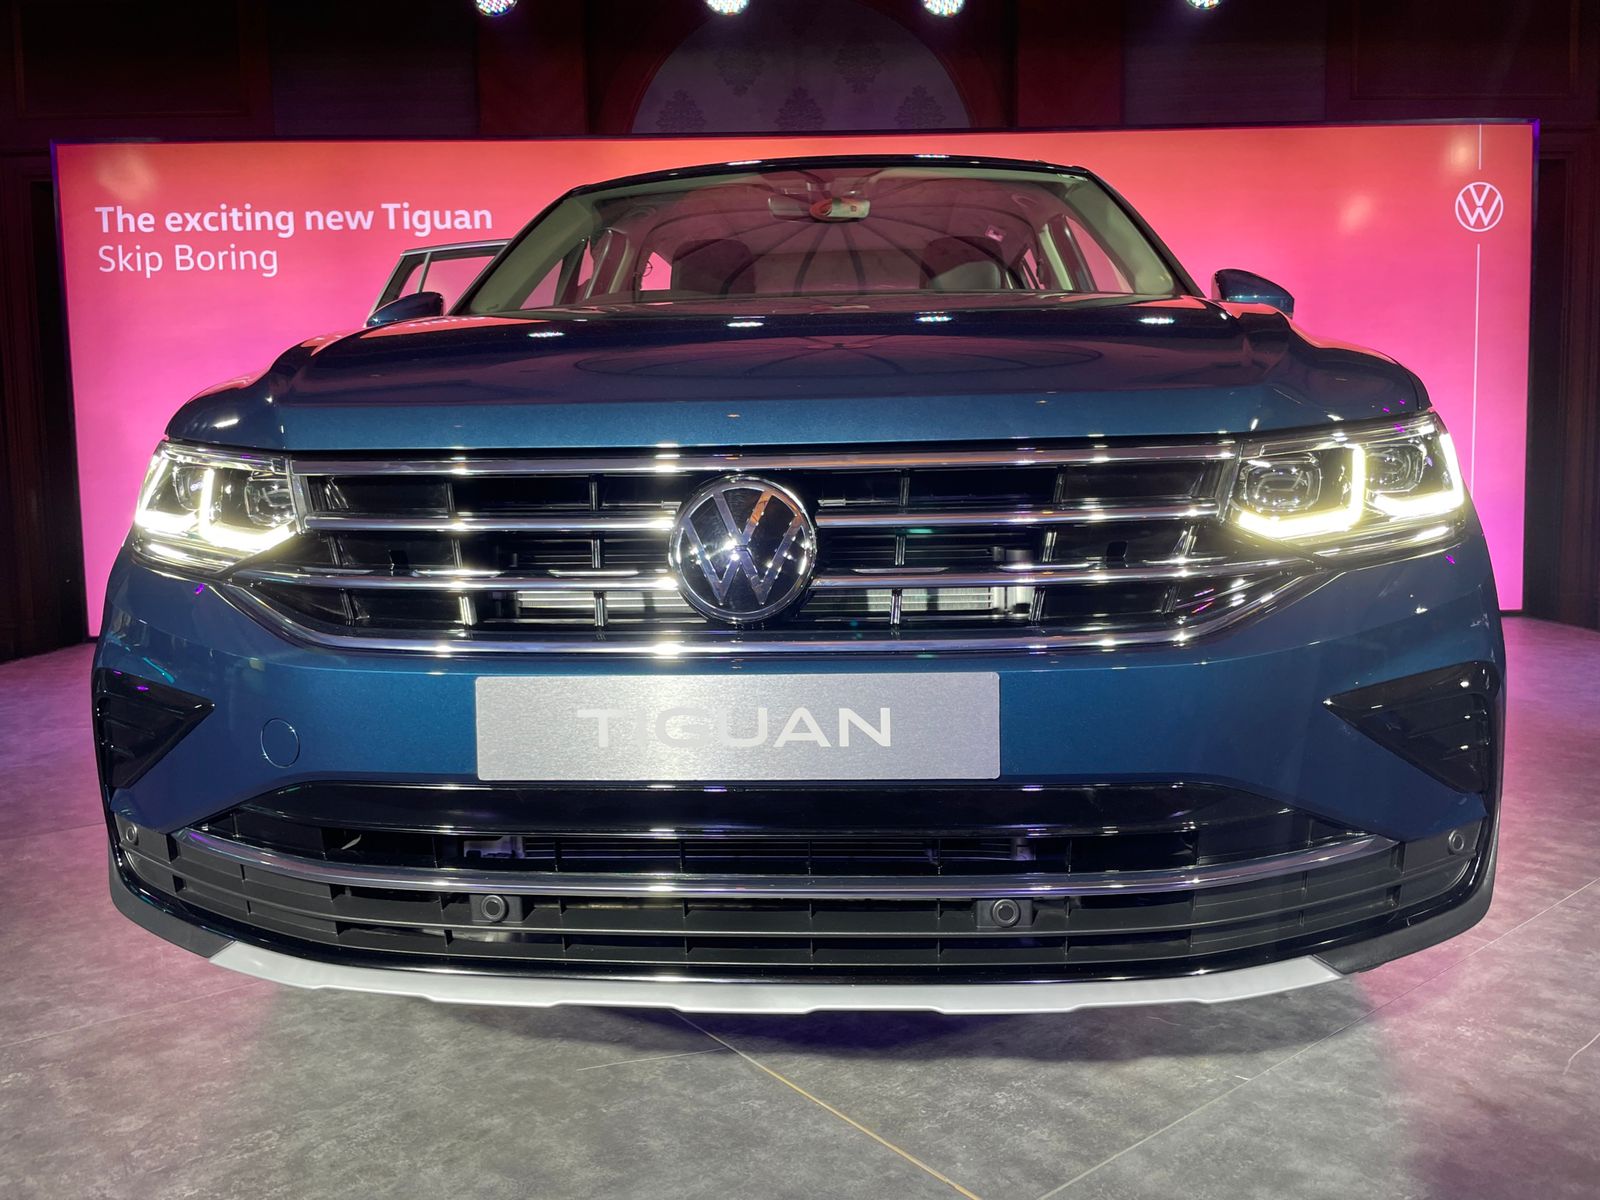 Volkswagen Tiguan First Look Review: SUV में फीचर्स, लुक और प्रीमियम की तलाश करने वालों के लिए खास है Volkswagen की नई Tiguan